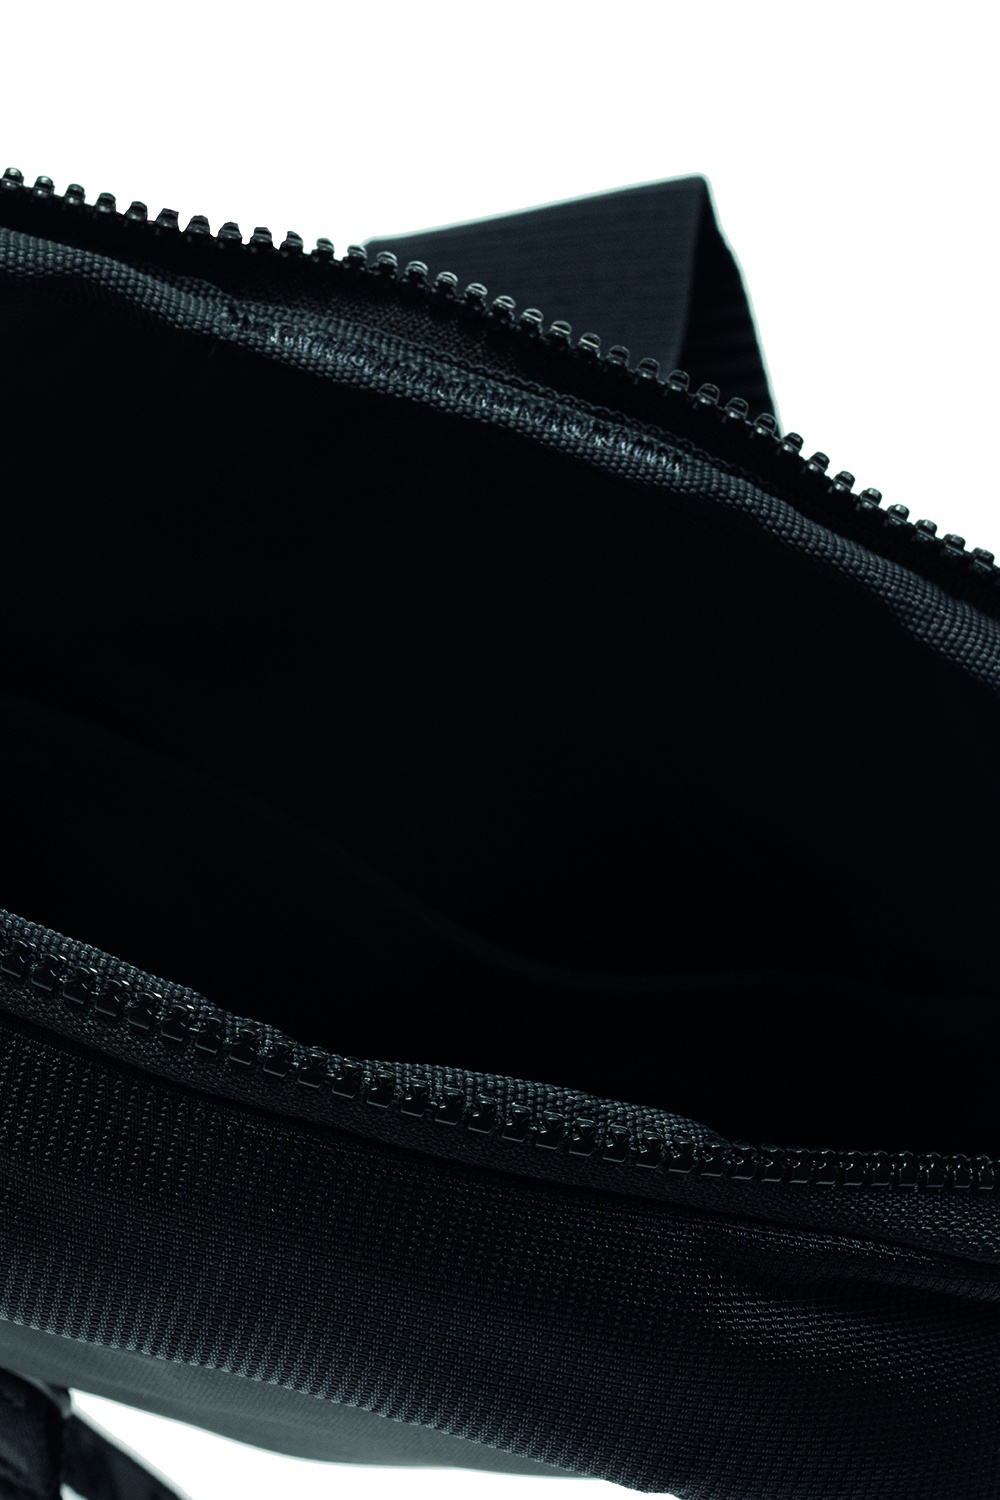 Nike One backpack in black